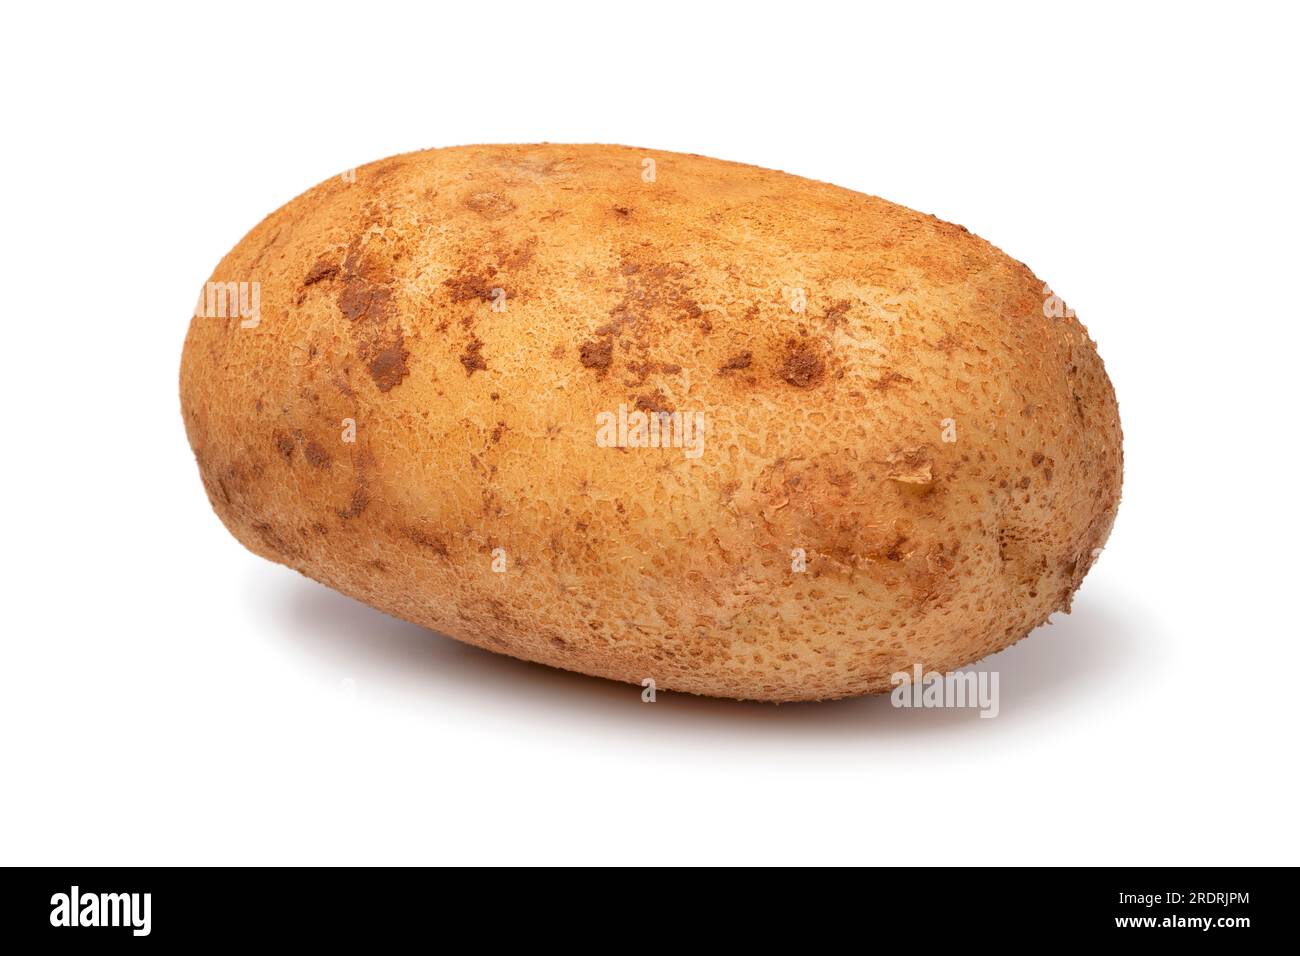 Single French potato isolated on white background close up Stock Photo